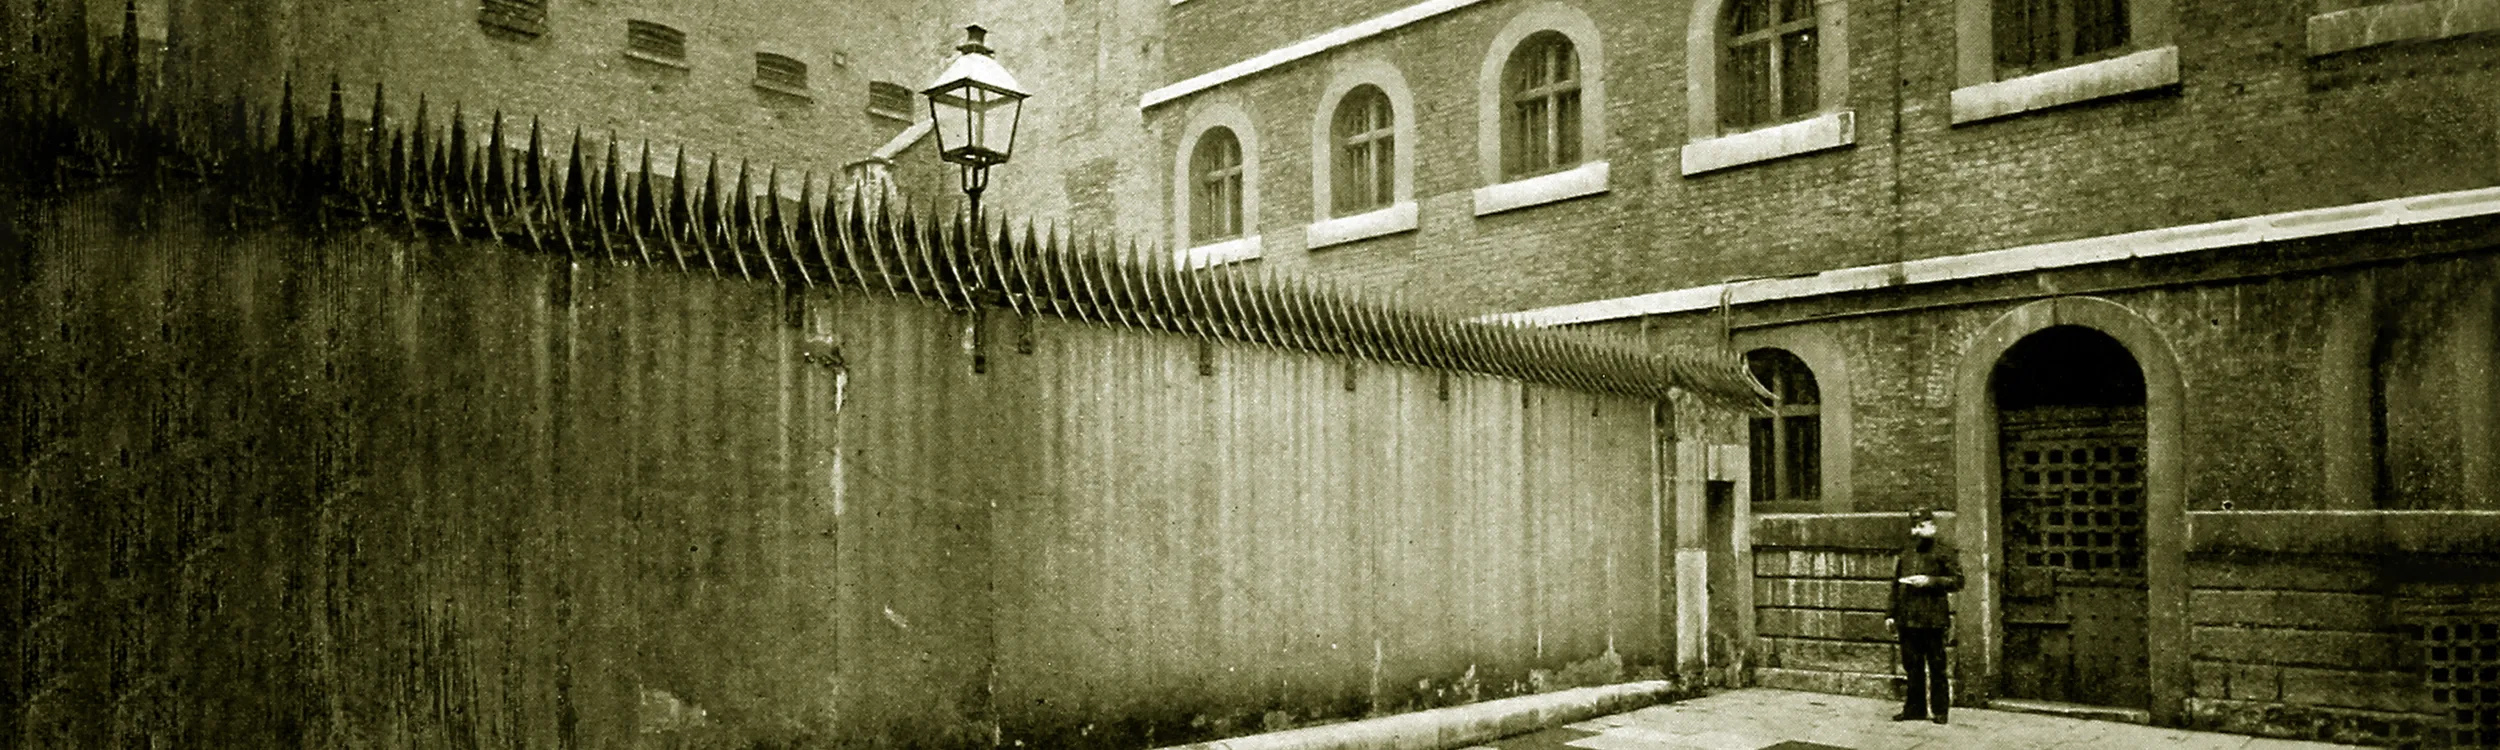 Find Criminal Records of Ancestors Imprisoned in Newgate